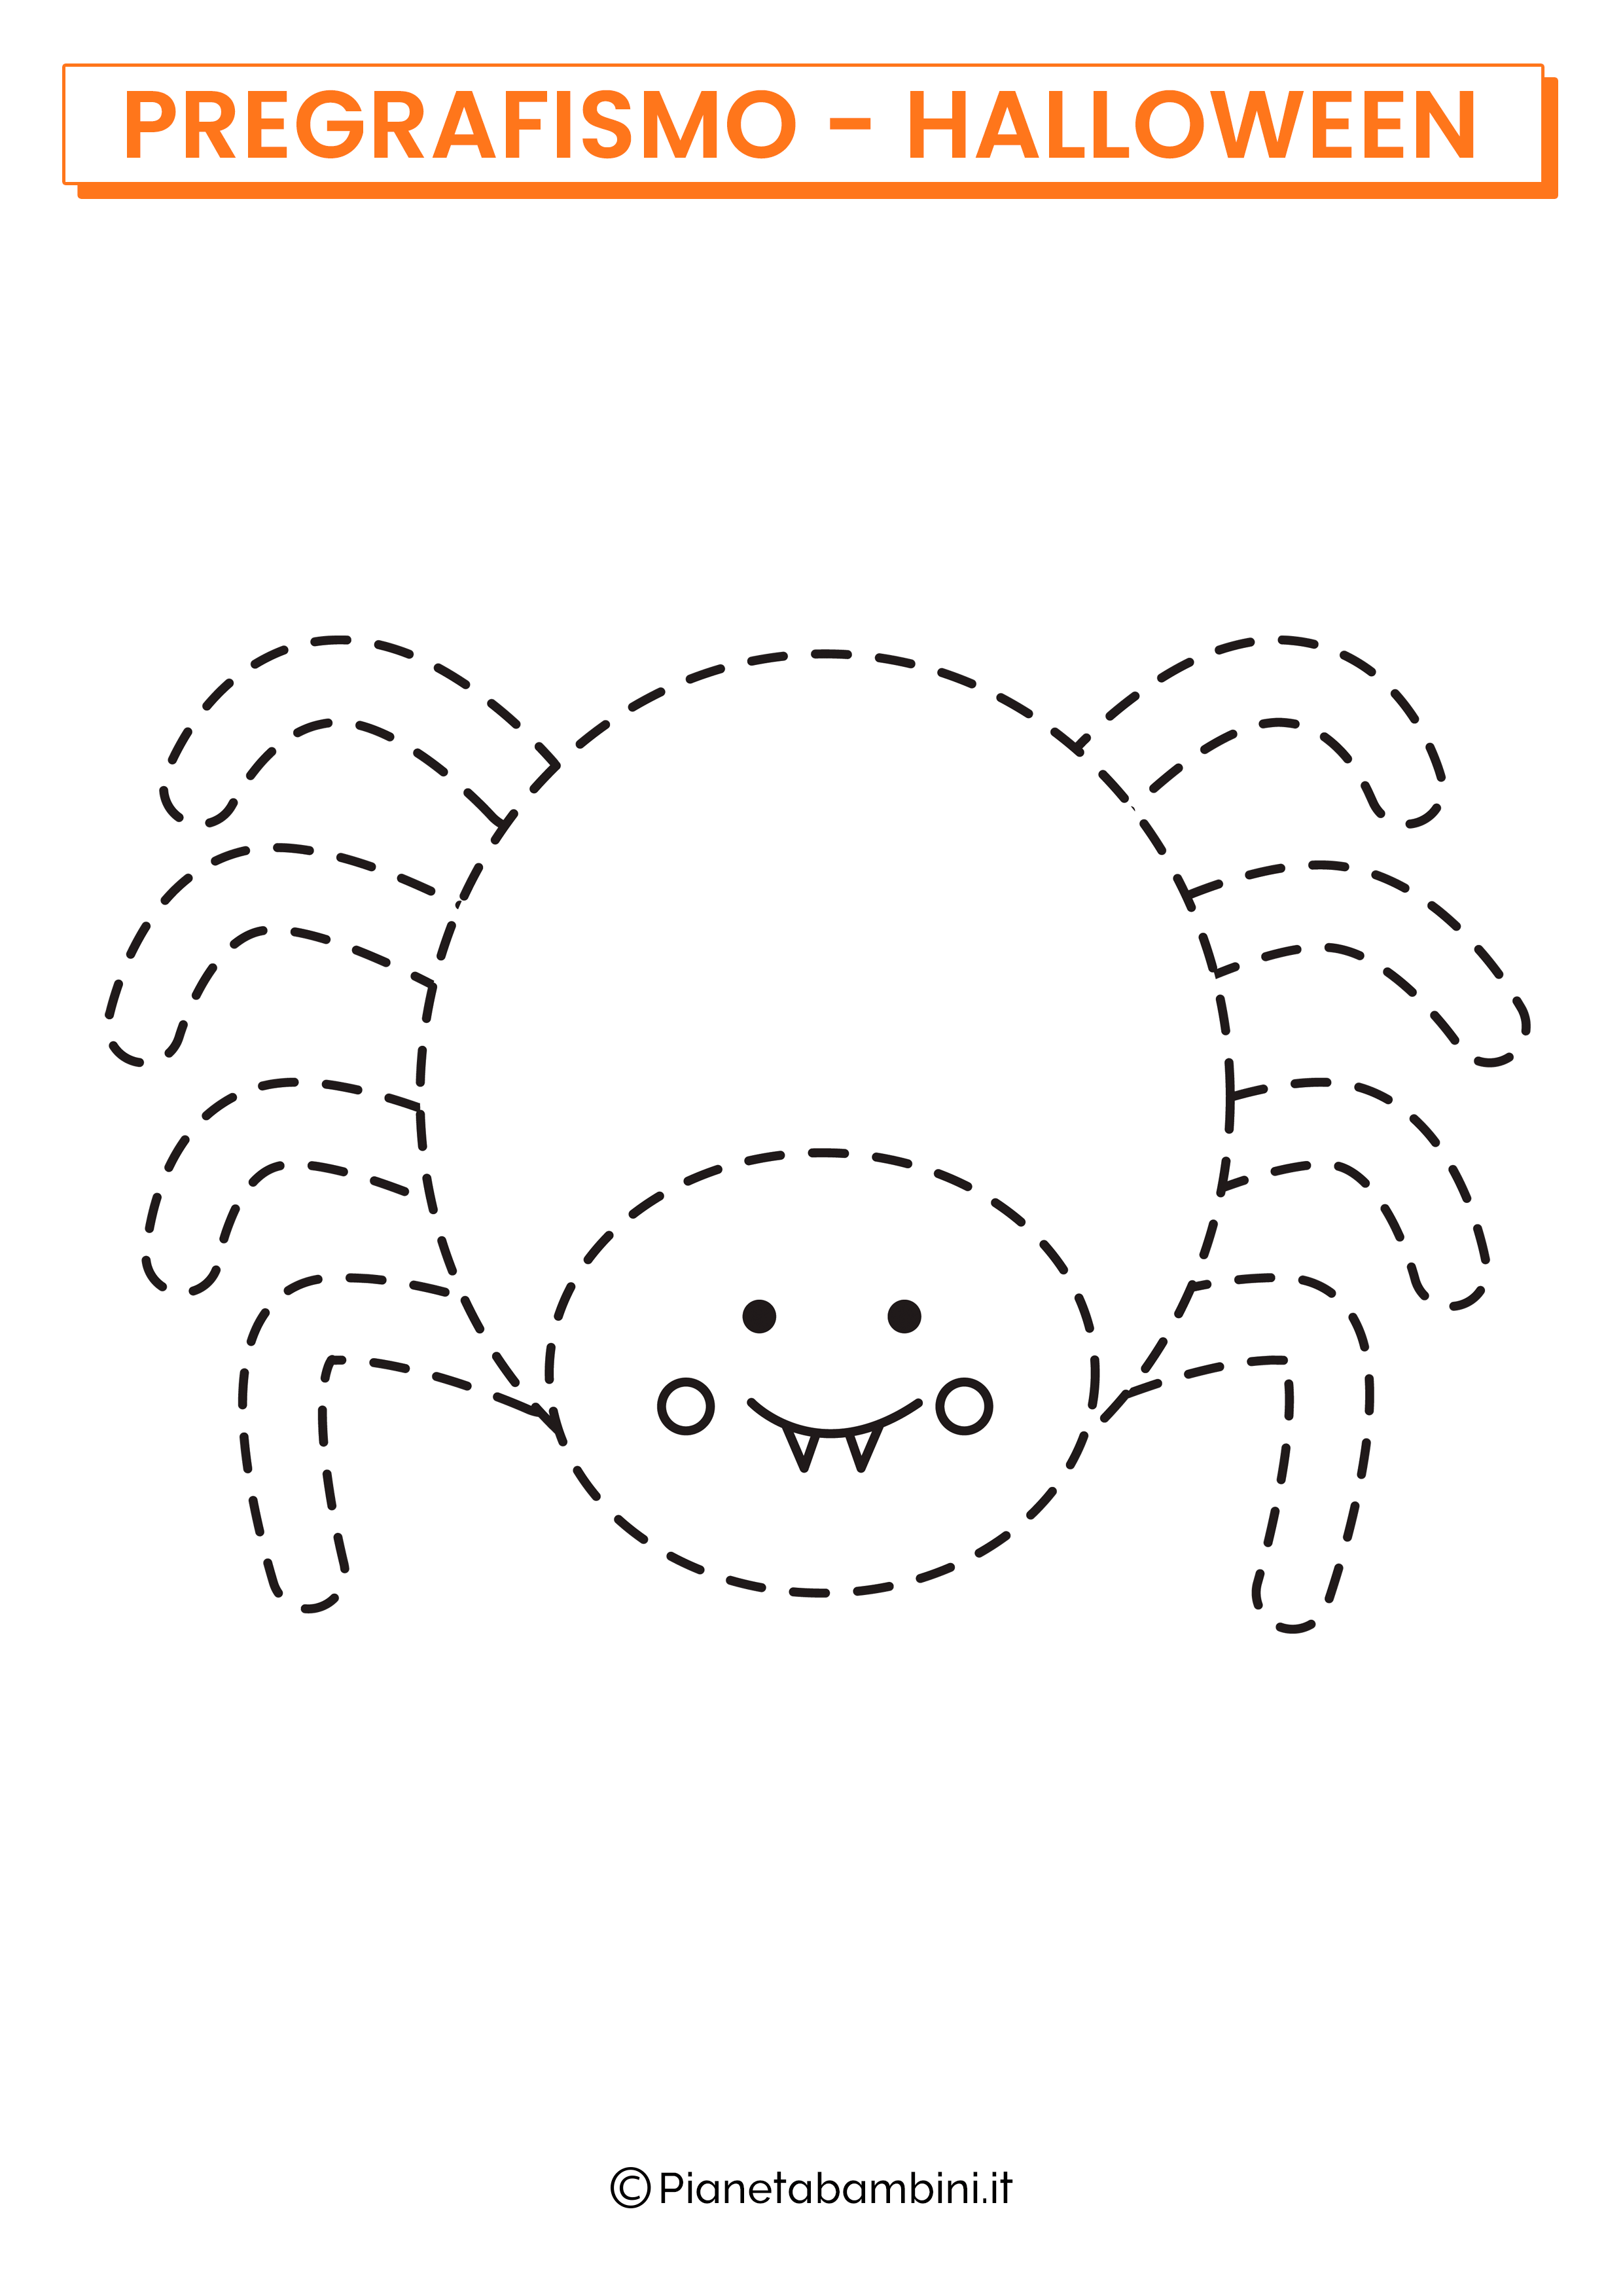 Scheda di pregrafismo di Halloween sul ragno